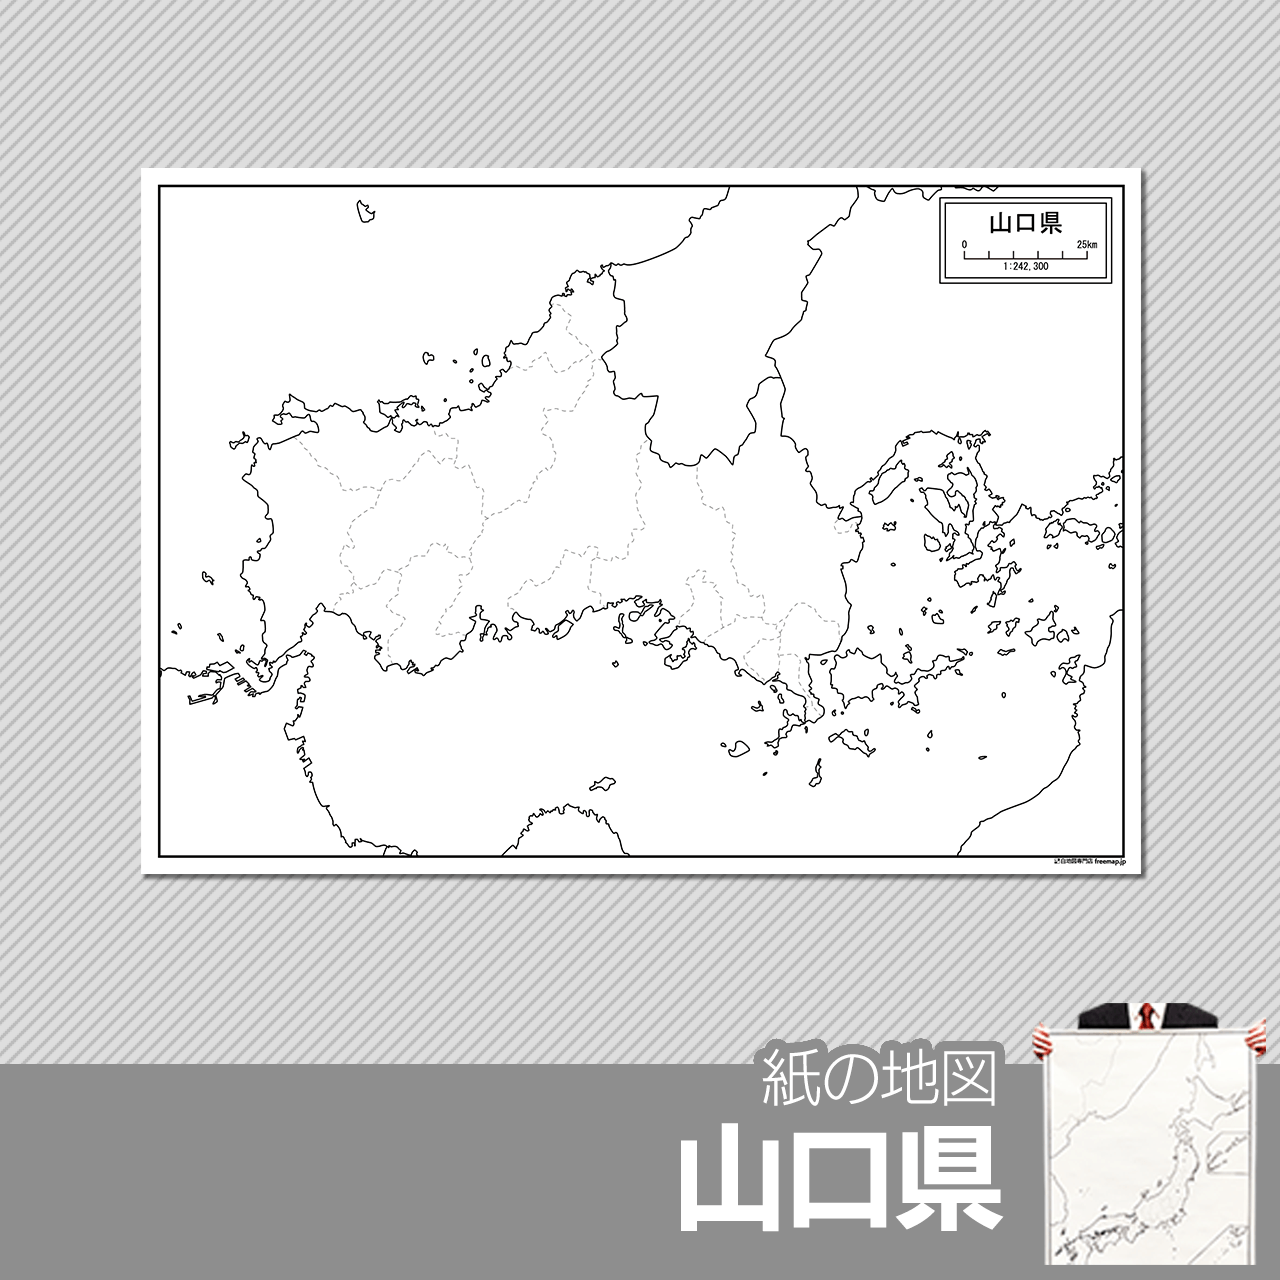 山口市の紙の白地図のサムネイル